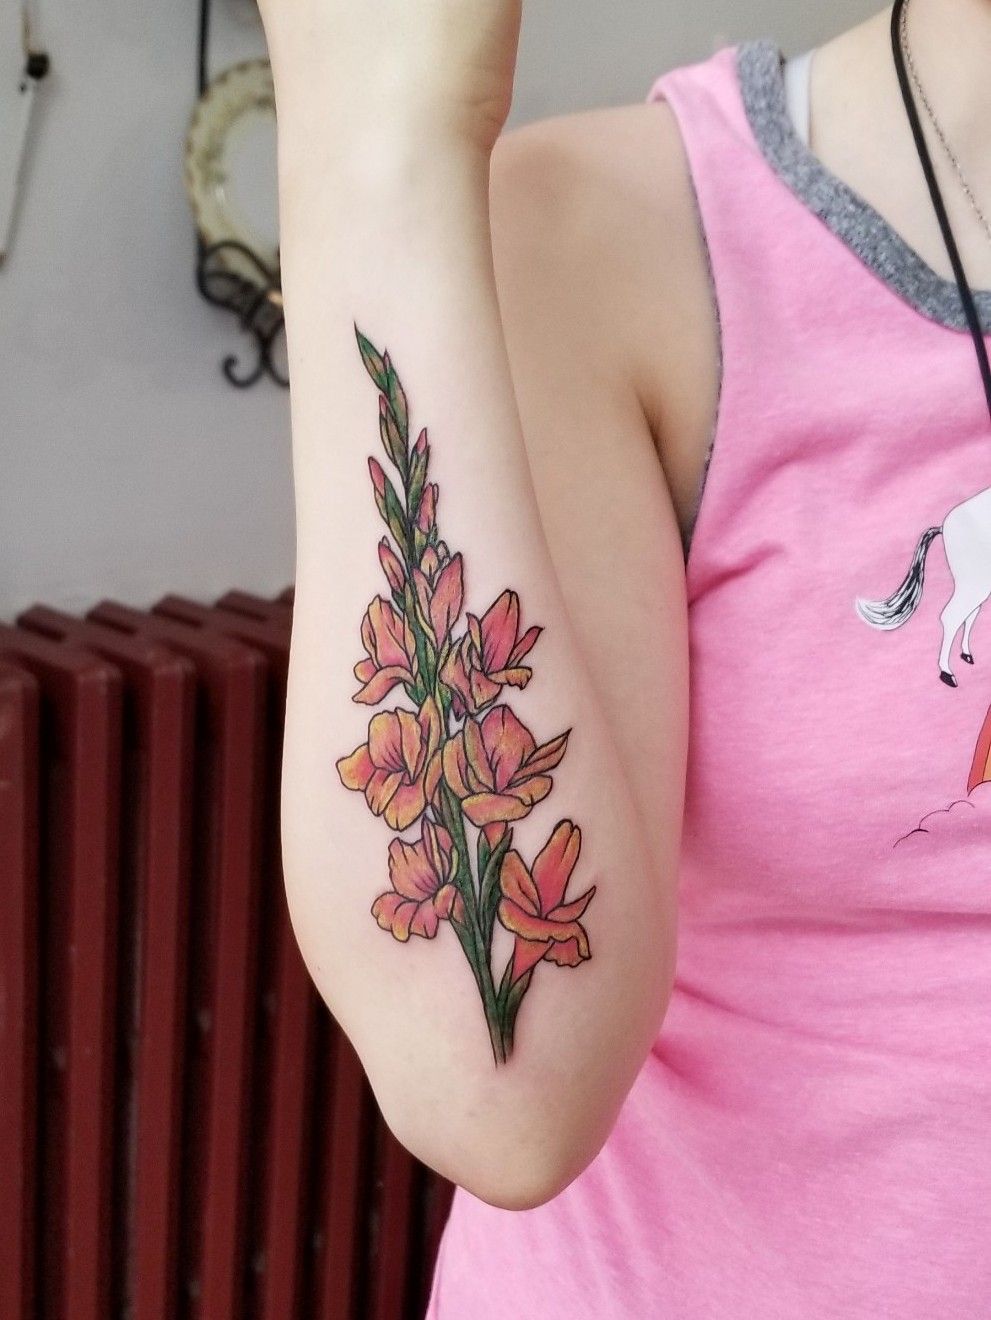  Gladiolus tattoo tattoos tattooartist art design flower deli   TikTok